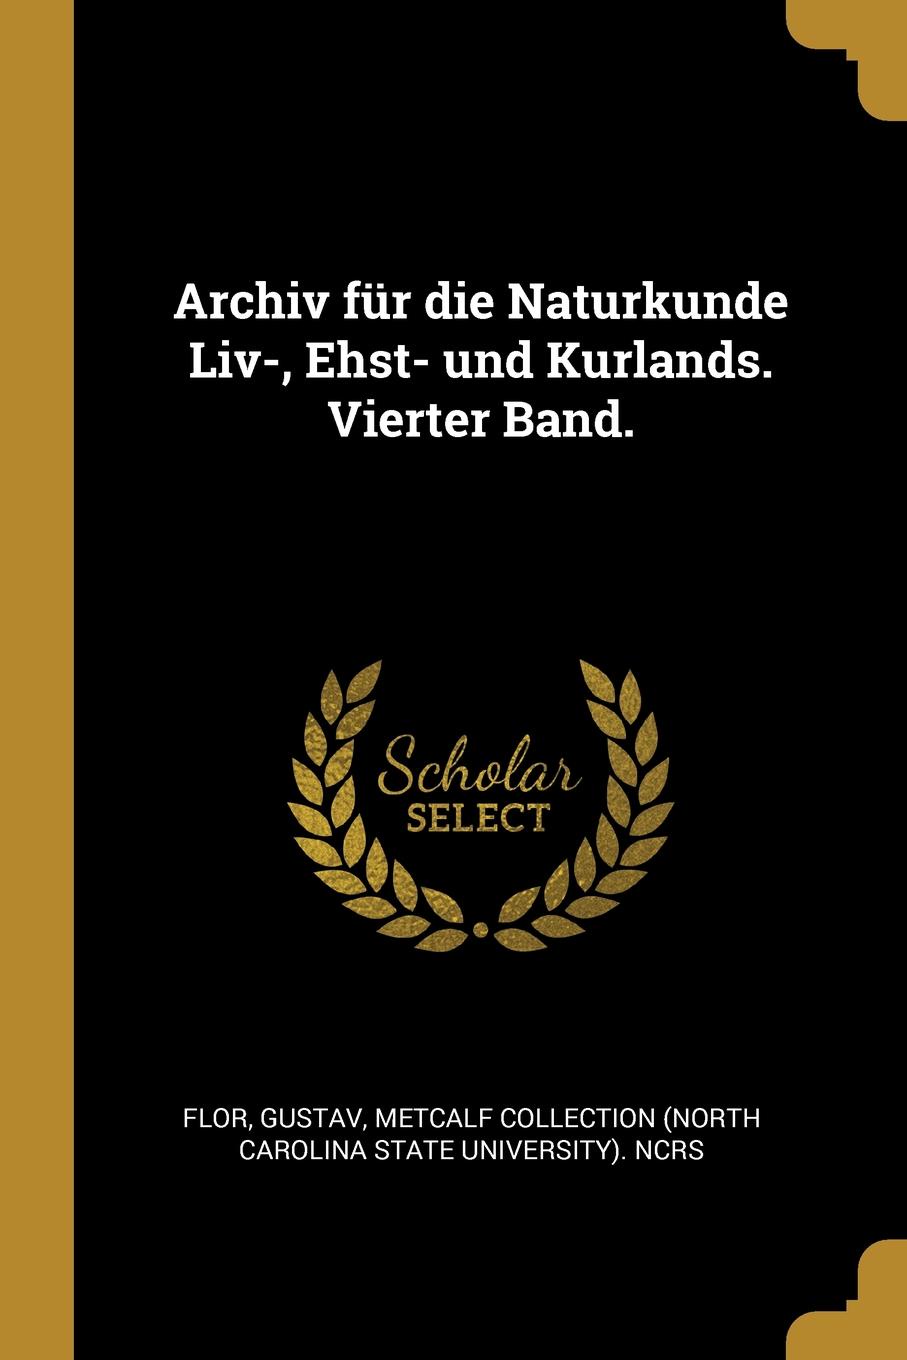 Archiv fur die Naturkunde Liv-, Ehst- und Kurlands. Vierter Band.